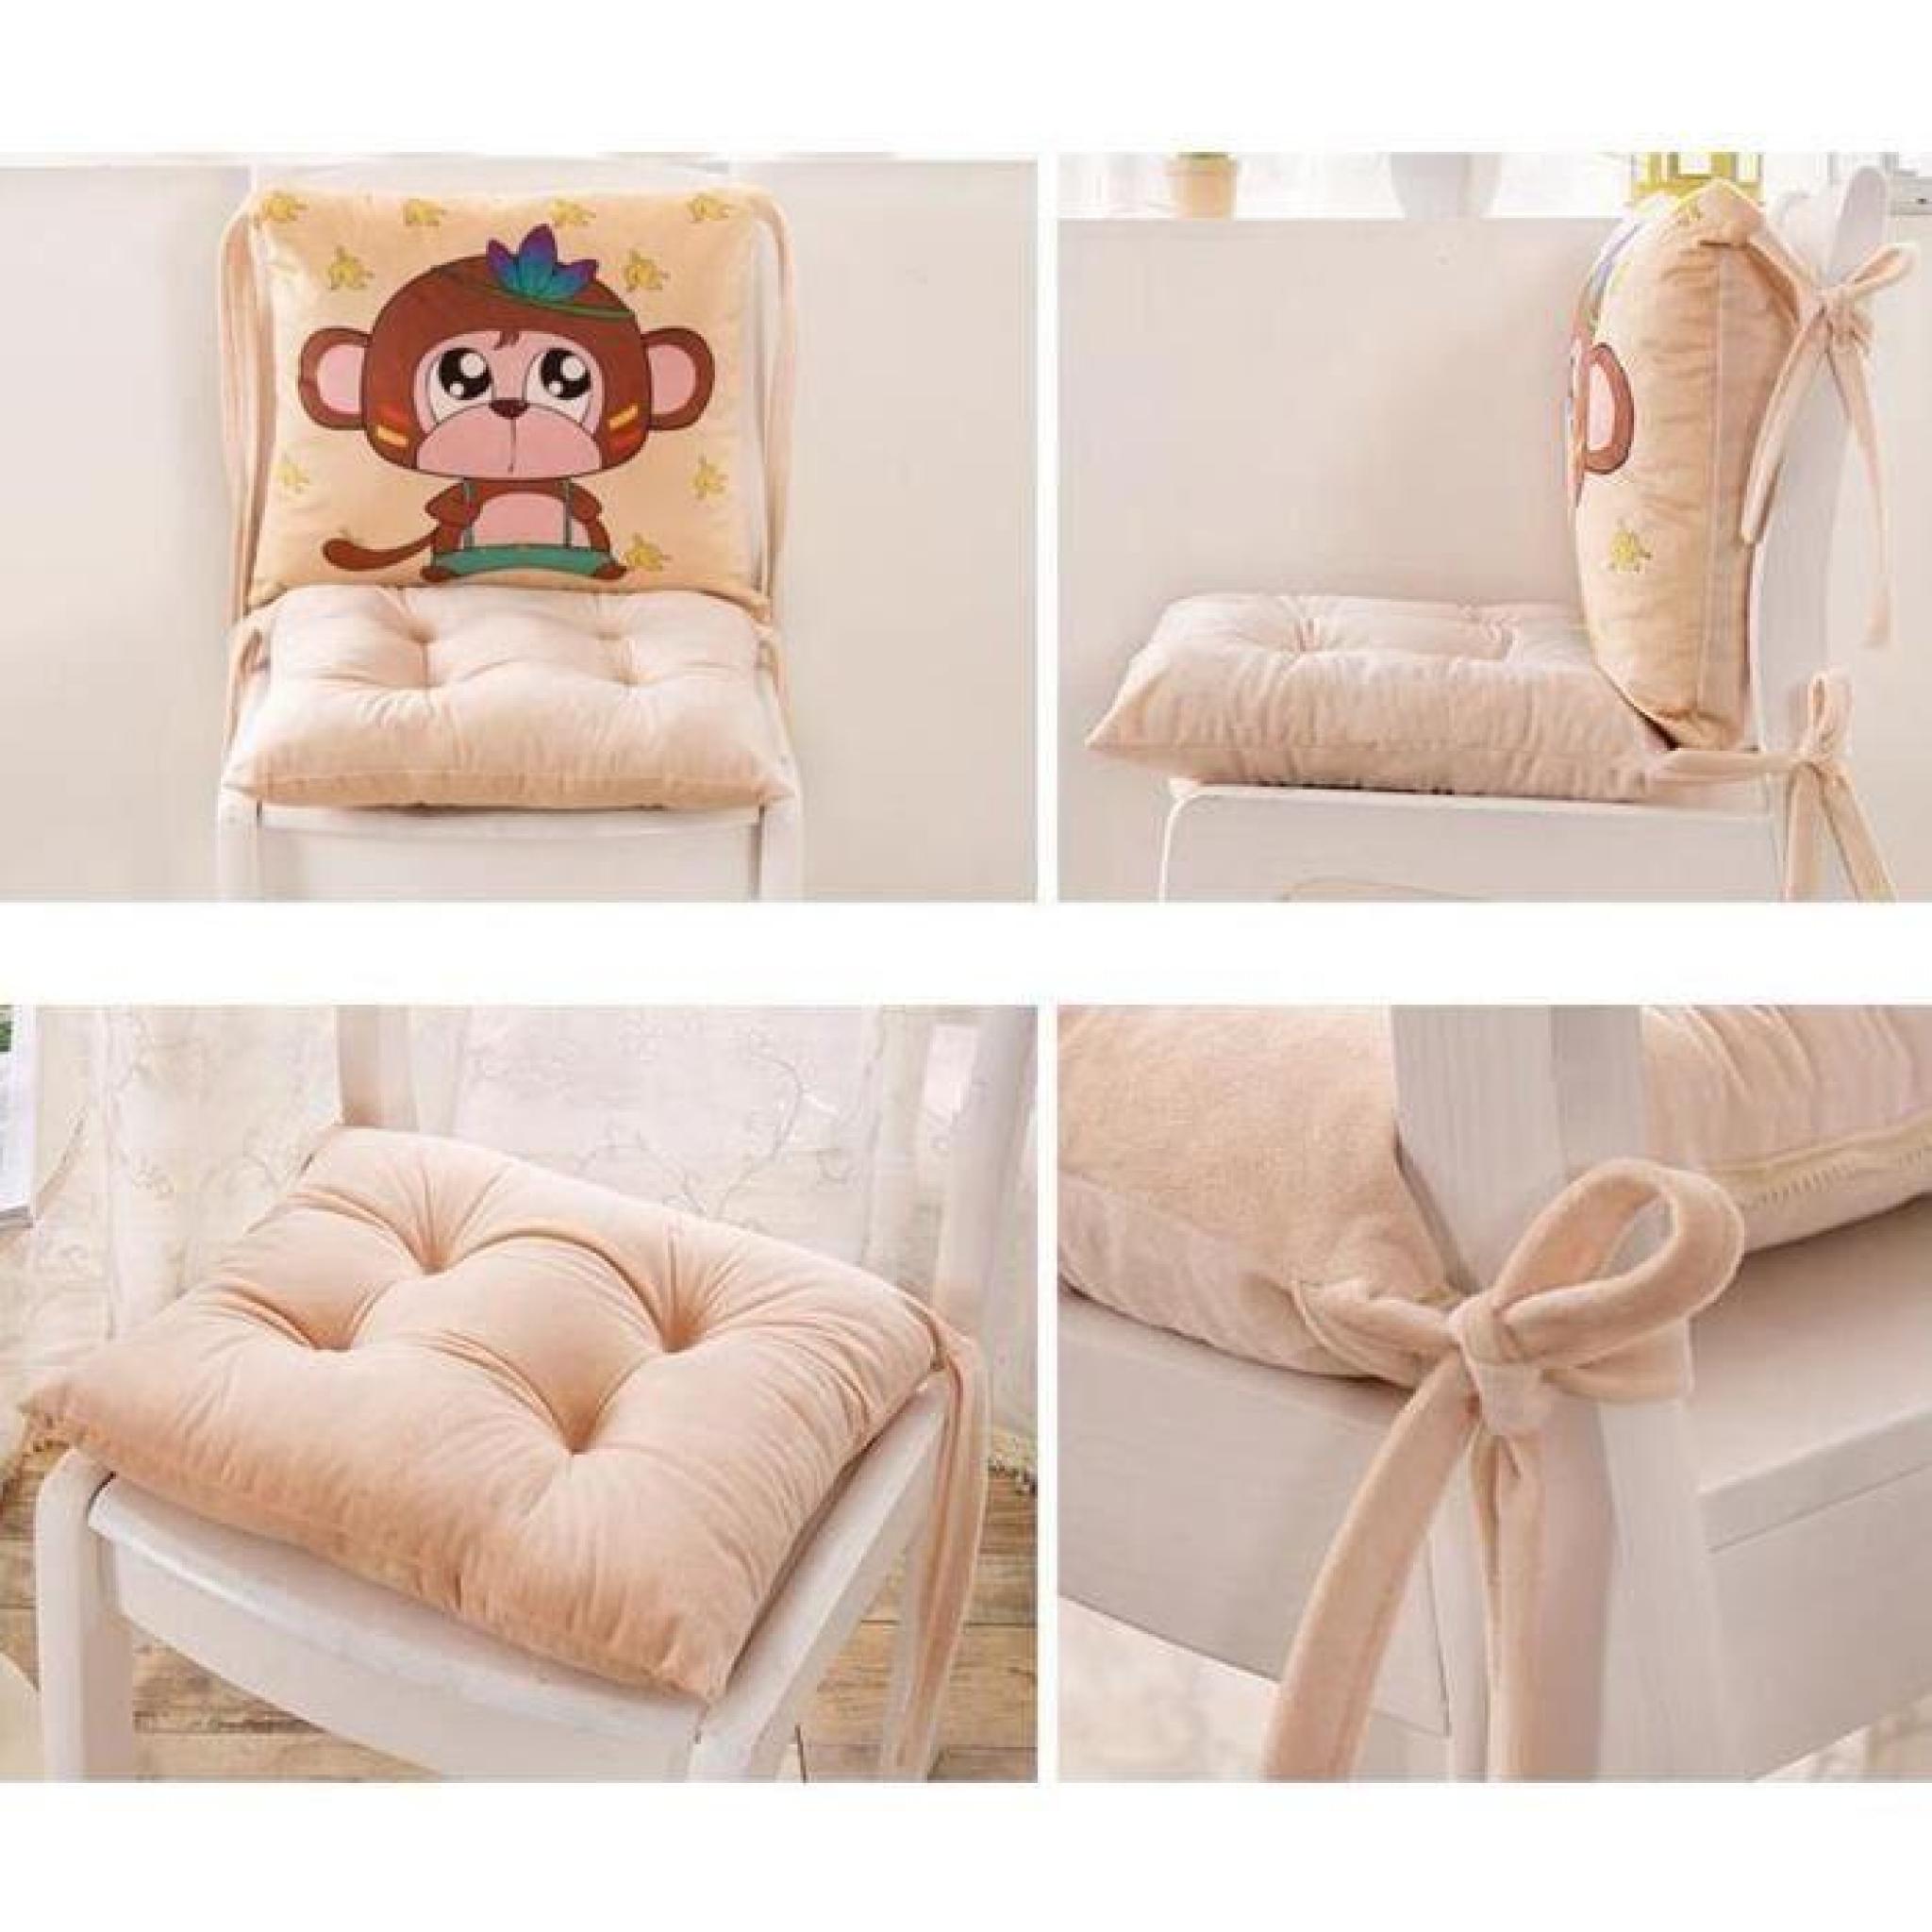 Lovely Chair Cushion Nouveau Coussin Chair Avec Monkey Print pas cher